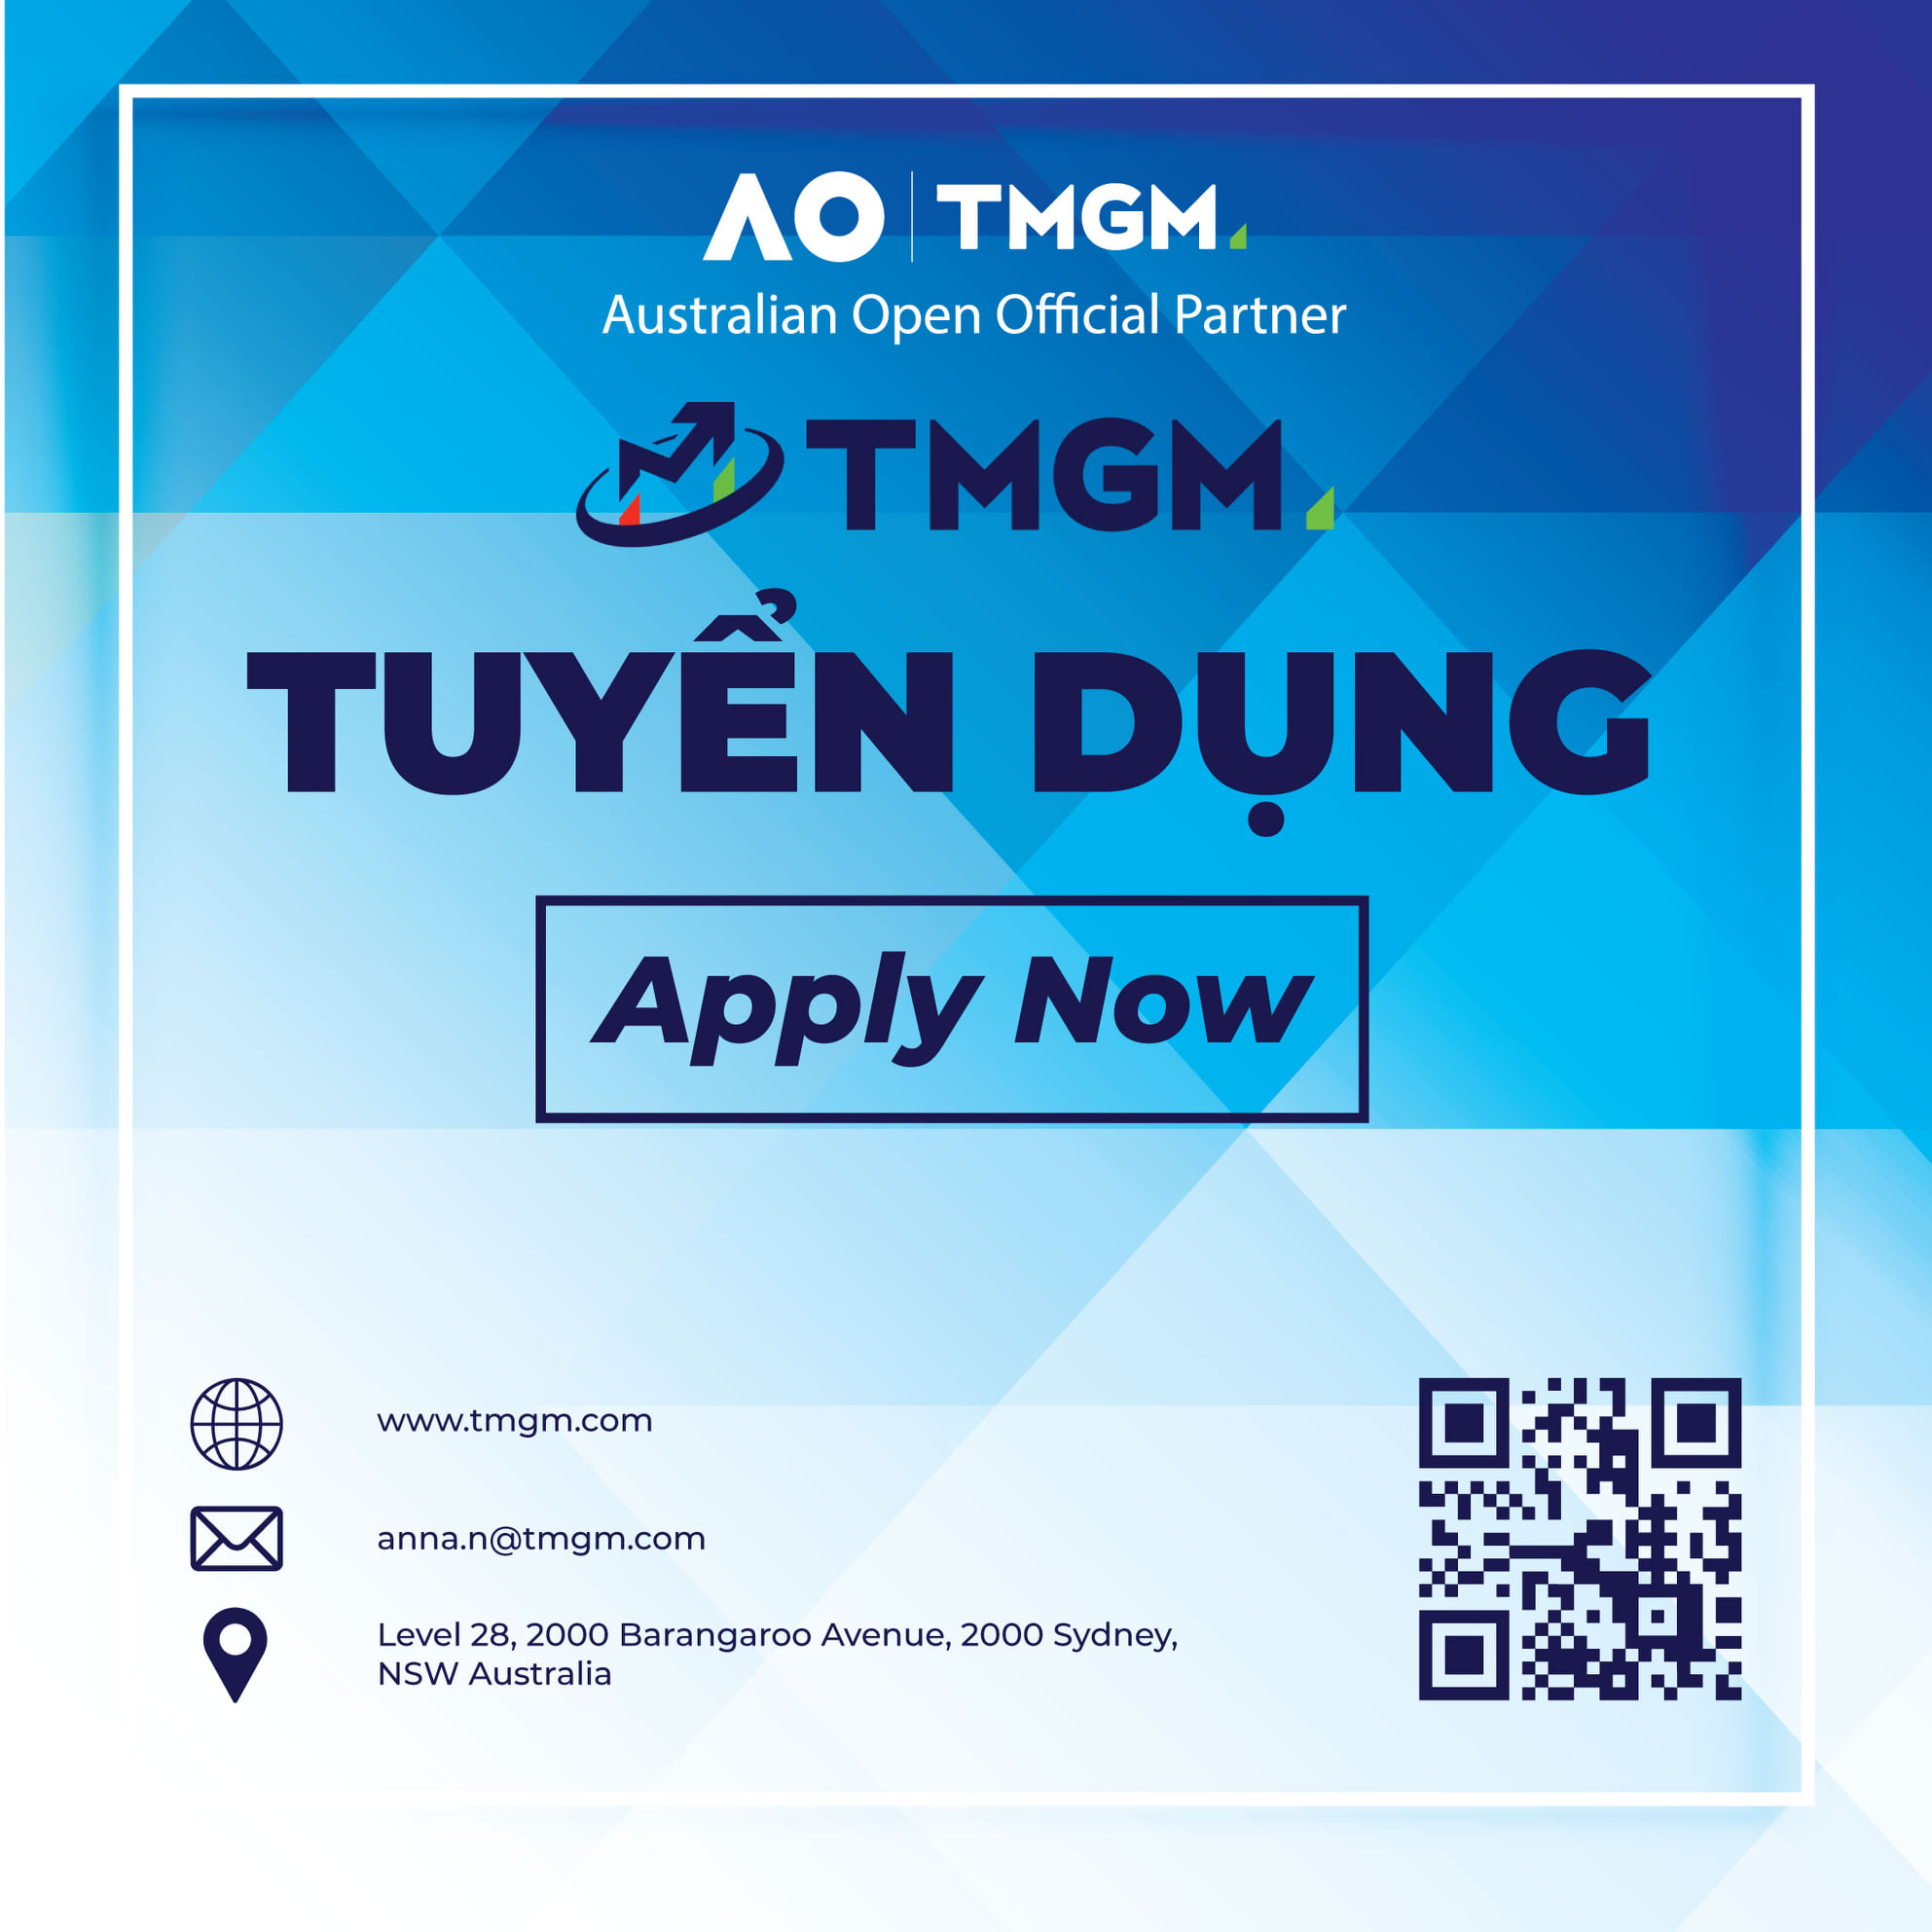 TMGM Tuyển dụng Vị trí Vietnamese Account Manager - Ha Noi